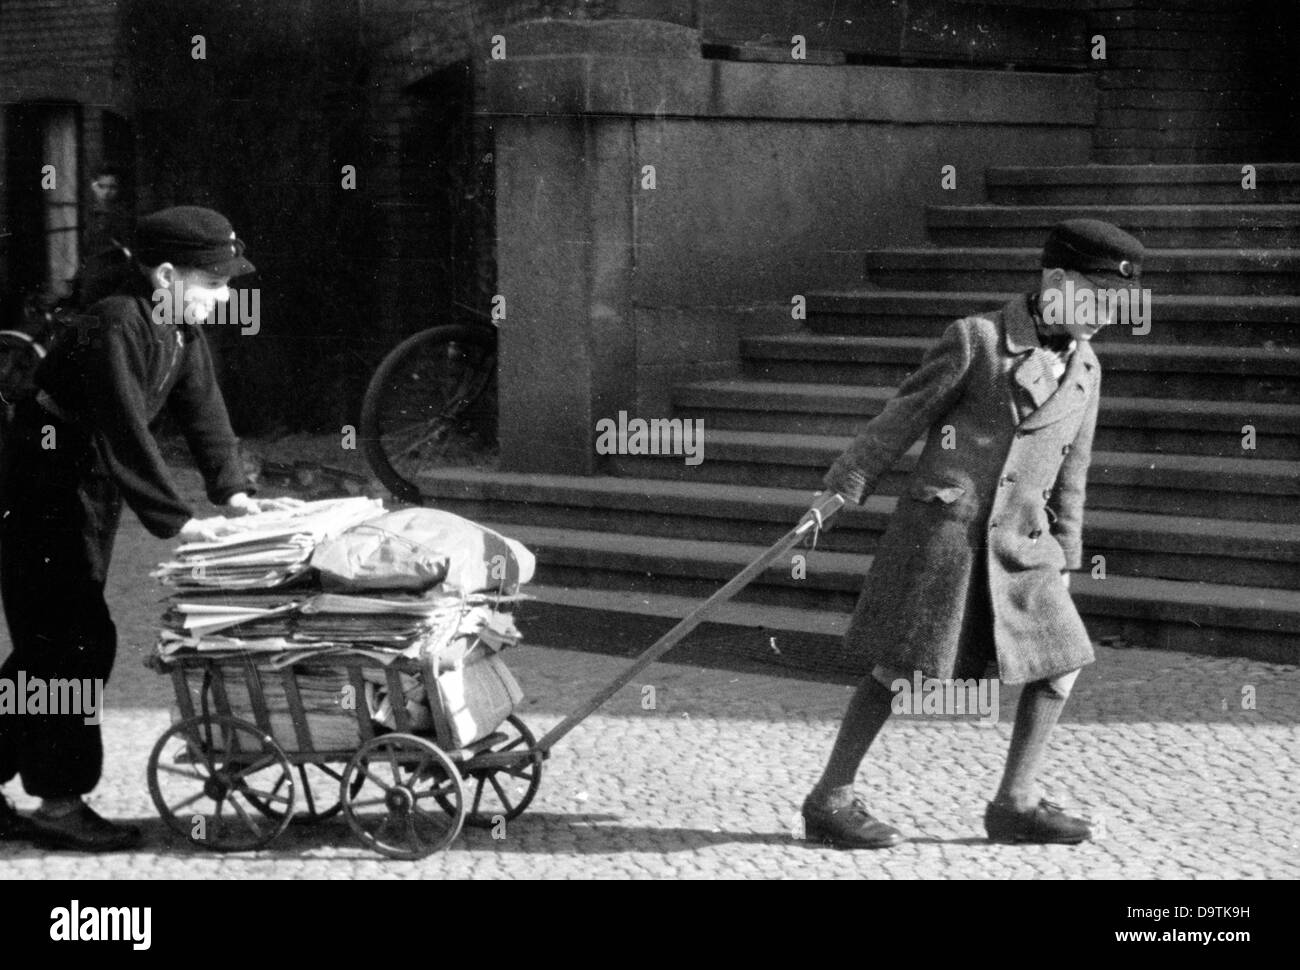 Un garçon a recueilli de vieux journaux et les amène maintenant à un point de collecte à son école, en mars 1943. Fotoarchiv für Zeitgeschichte Banque D'Images